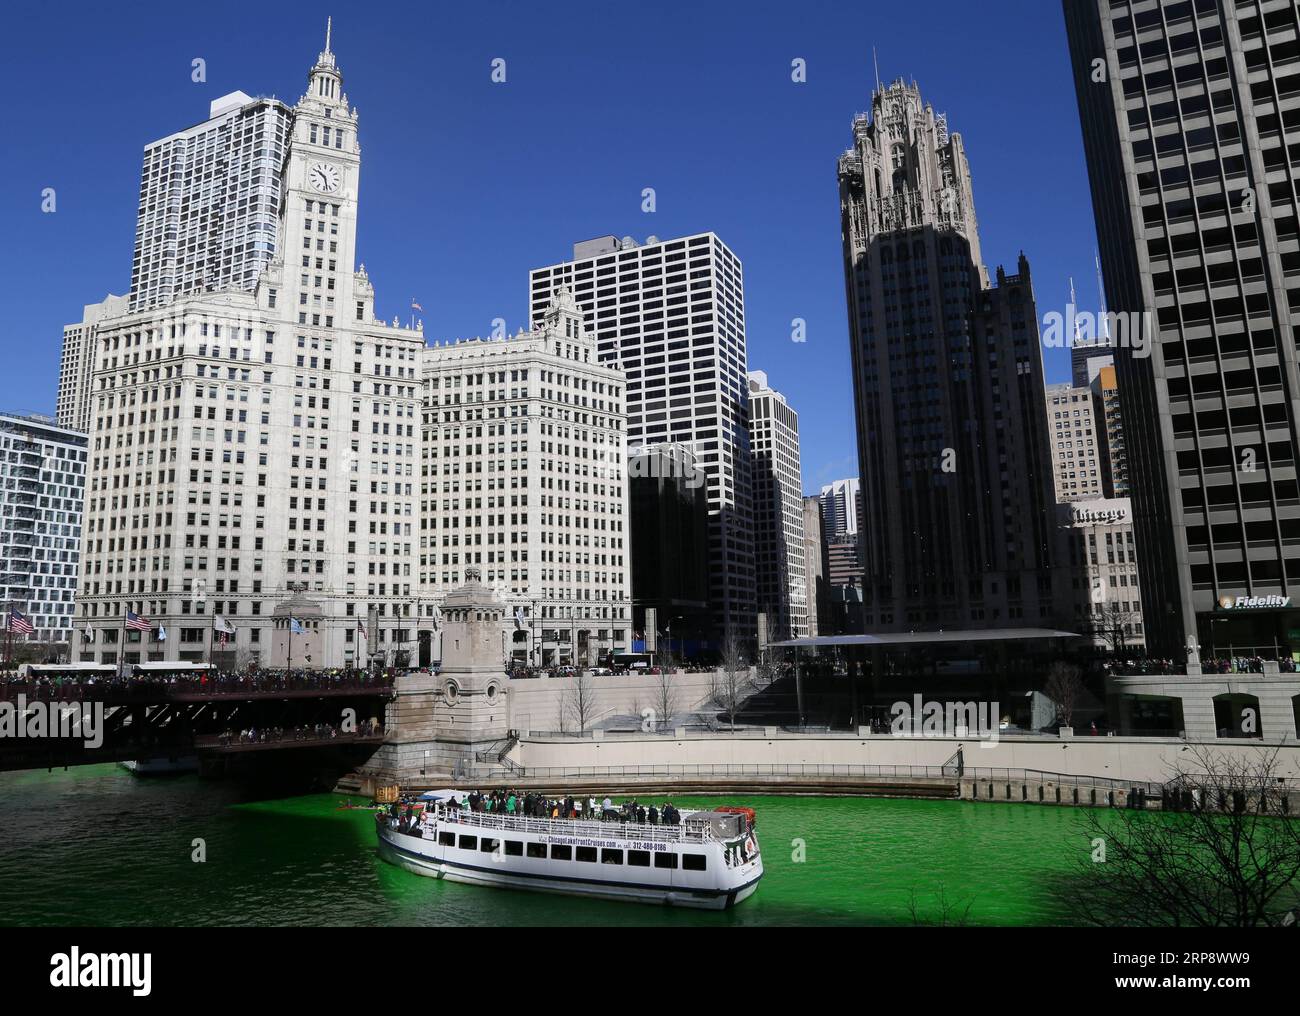 News Bilder des Tages (190316) -- CHICAGO, 16 marzo 2019 (Xinhua) -- Una barca turistica si vede sul verde fiume Chicago a Chicago, negli Stati Uniti, il 16 marzo 2019. Il fiume Chicago era colorato di verde il sabato per celebrare l'imminente St. Il giorno di Patrick, che è segnato il 17 marzo. L'evento ha attirato decine di migliaia di spettatori nel centro di Chicago. (Xinhua/Wang Qiang) U.S.-CHICAGO-ST. FESTA DI PATRICK PUBLICATIONXNOTXINXCHN Foto Stock